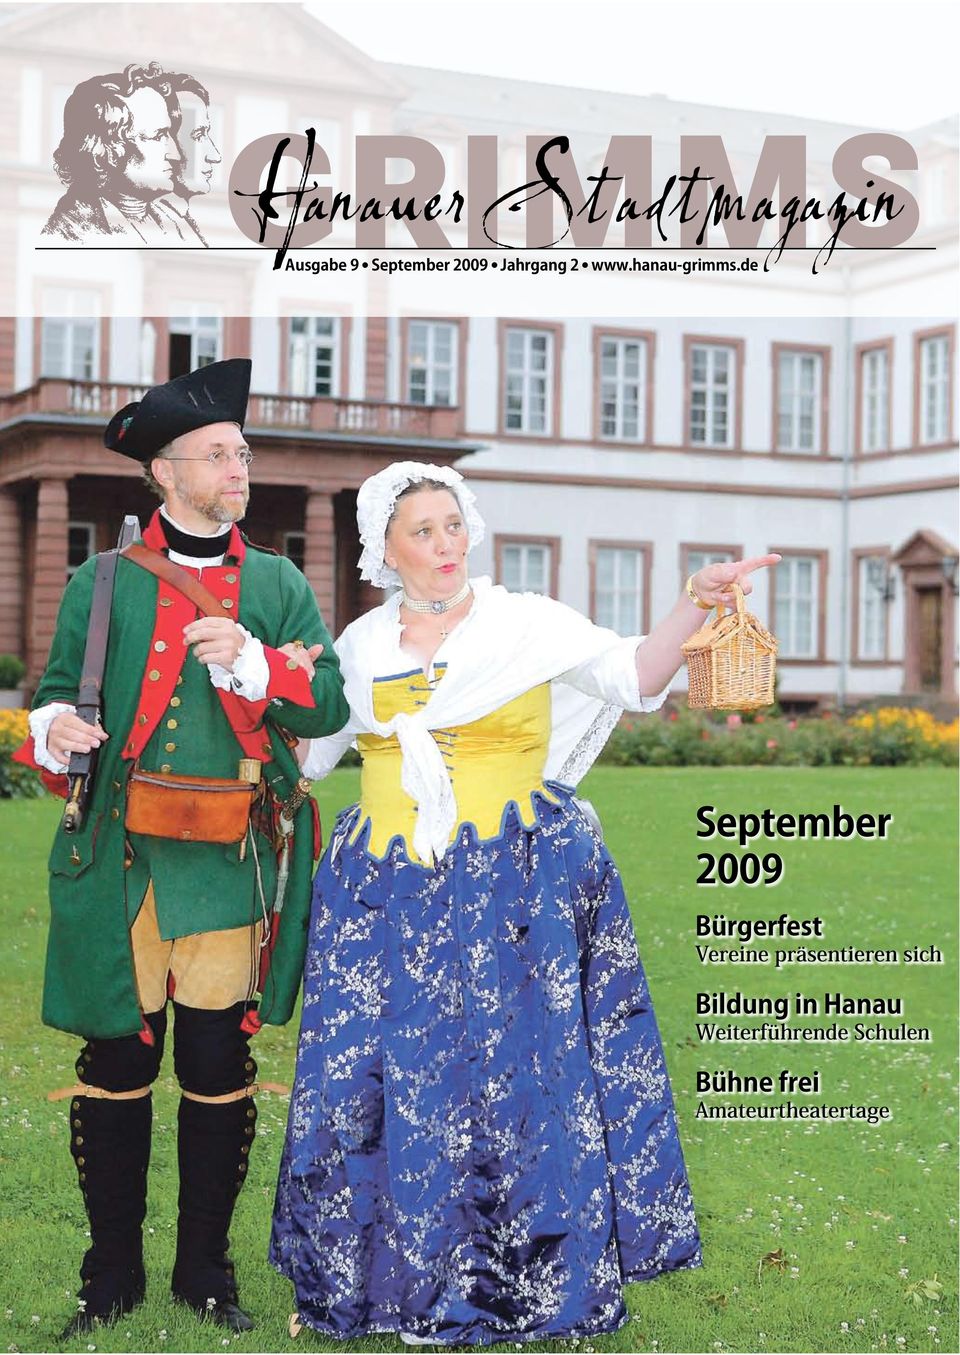 de September 2009 Bürgerfest Vereine